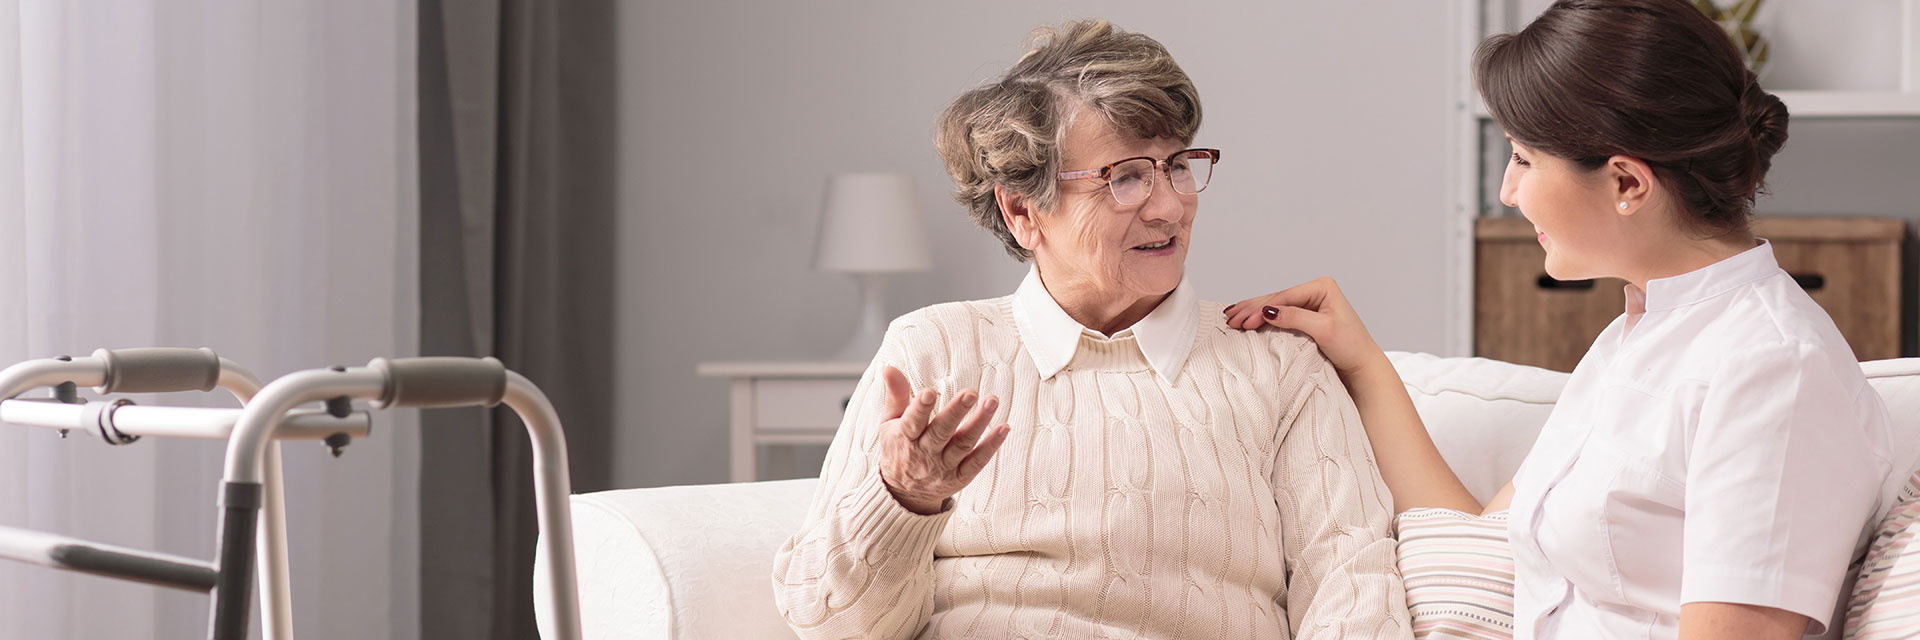 Happy older woman in nursing home with nurse